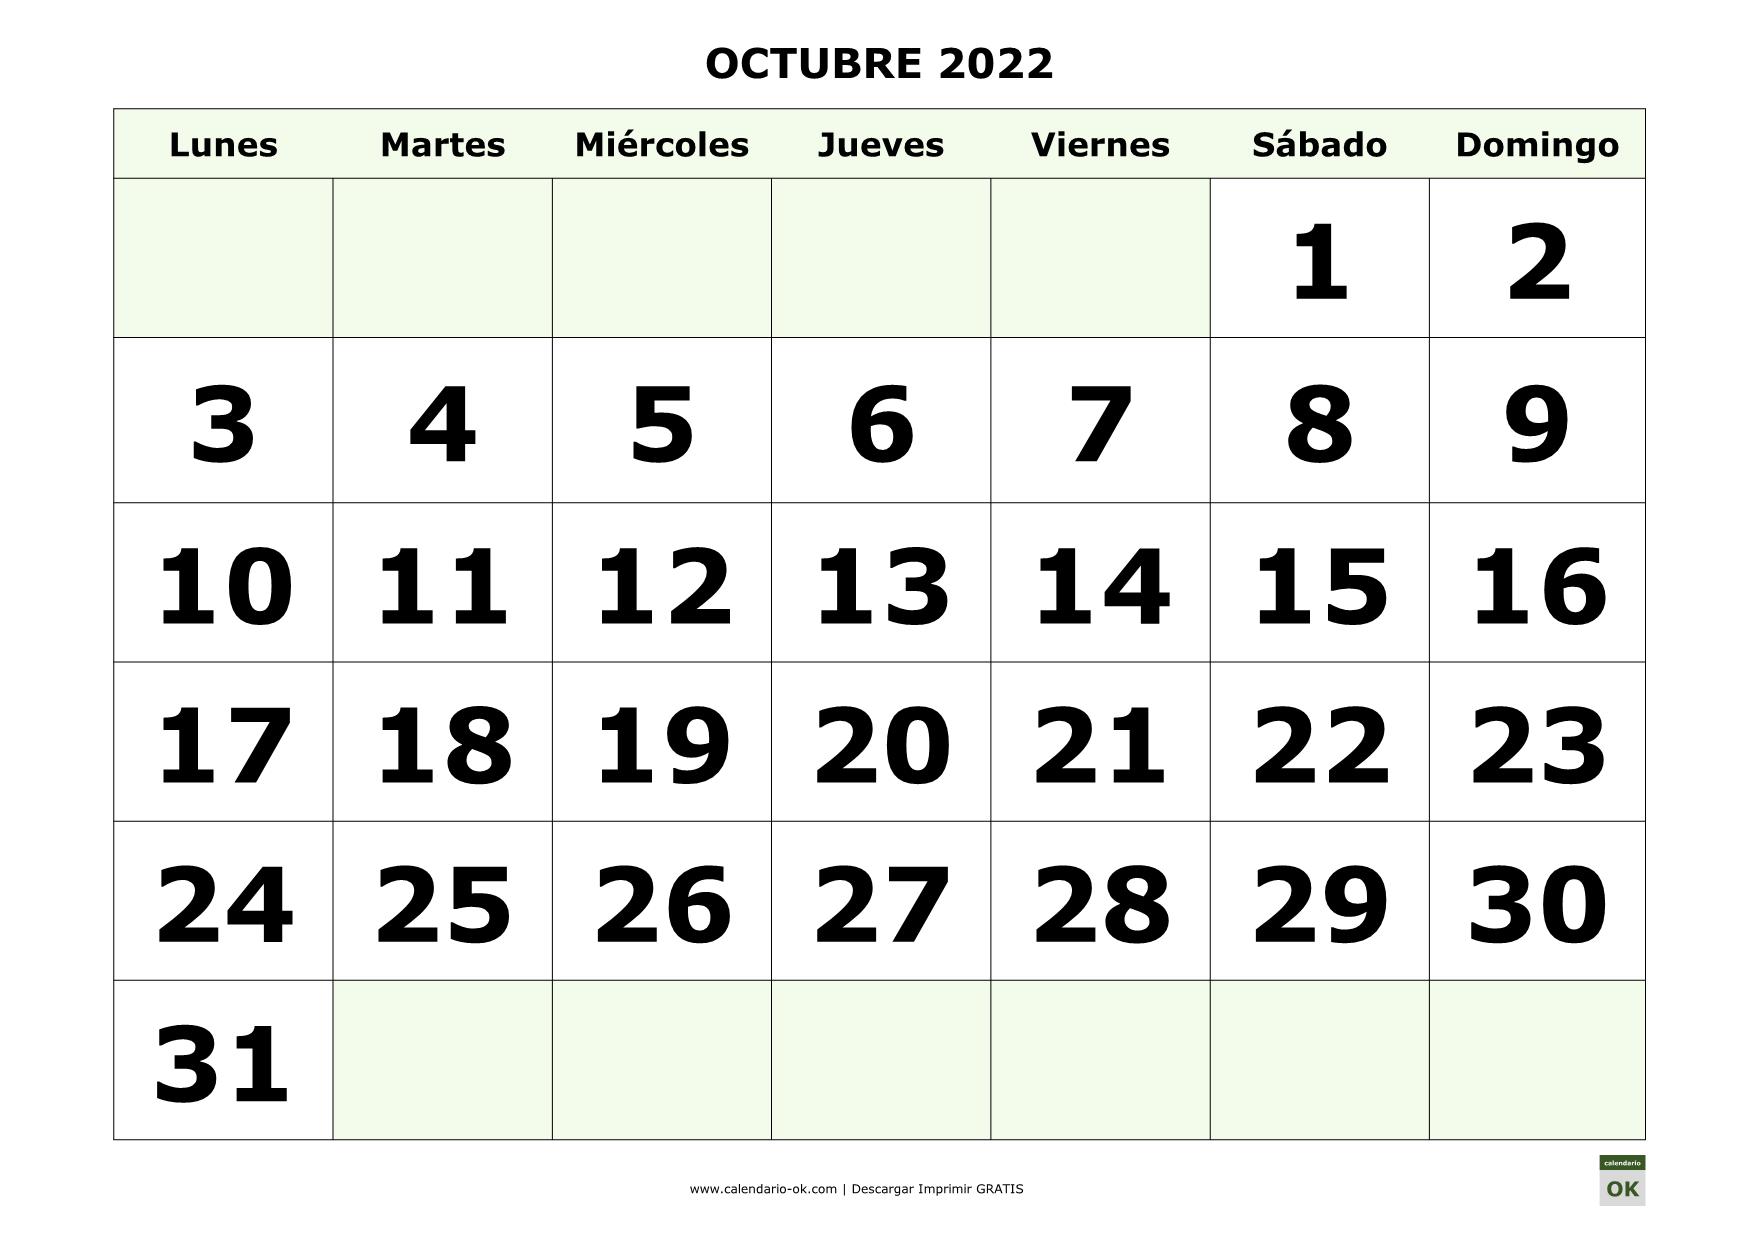 OCTUBRE 2022 con NUMEROS GRANDES